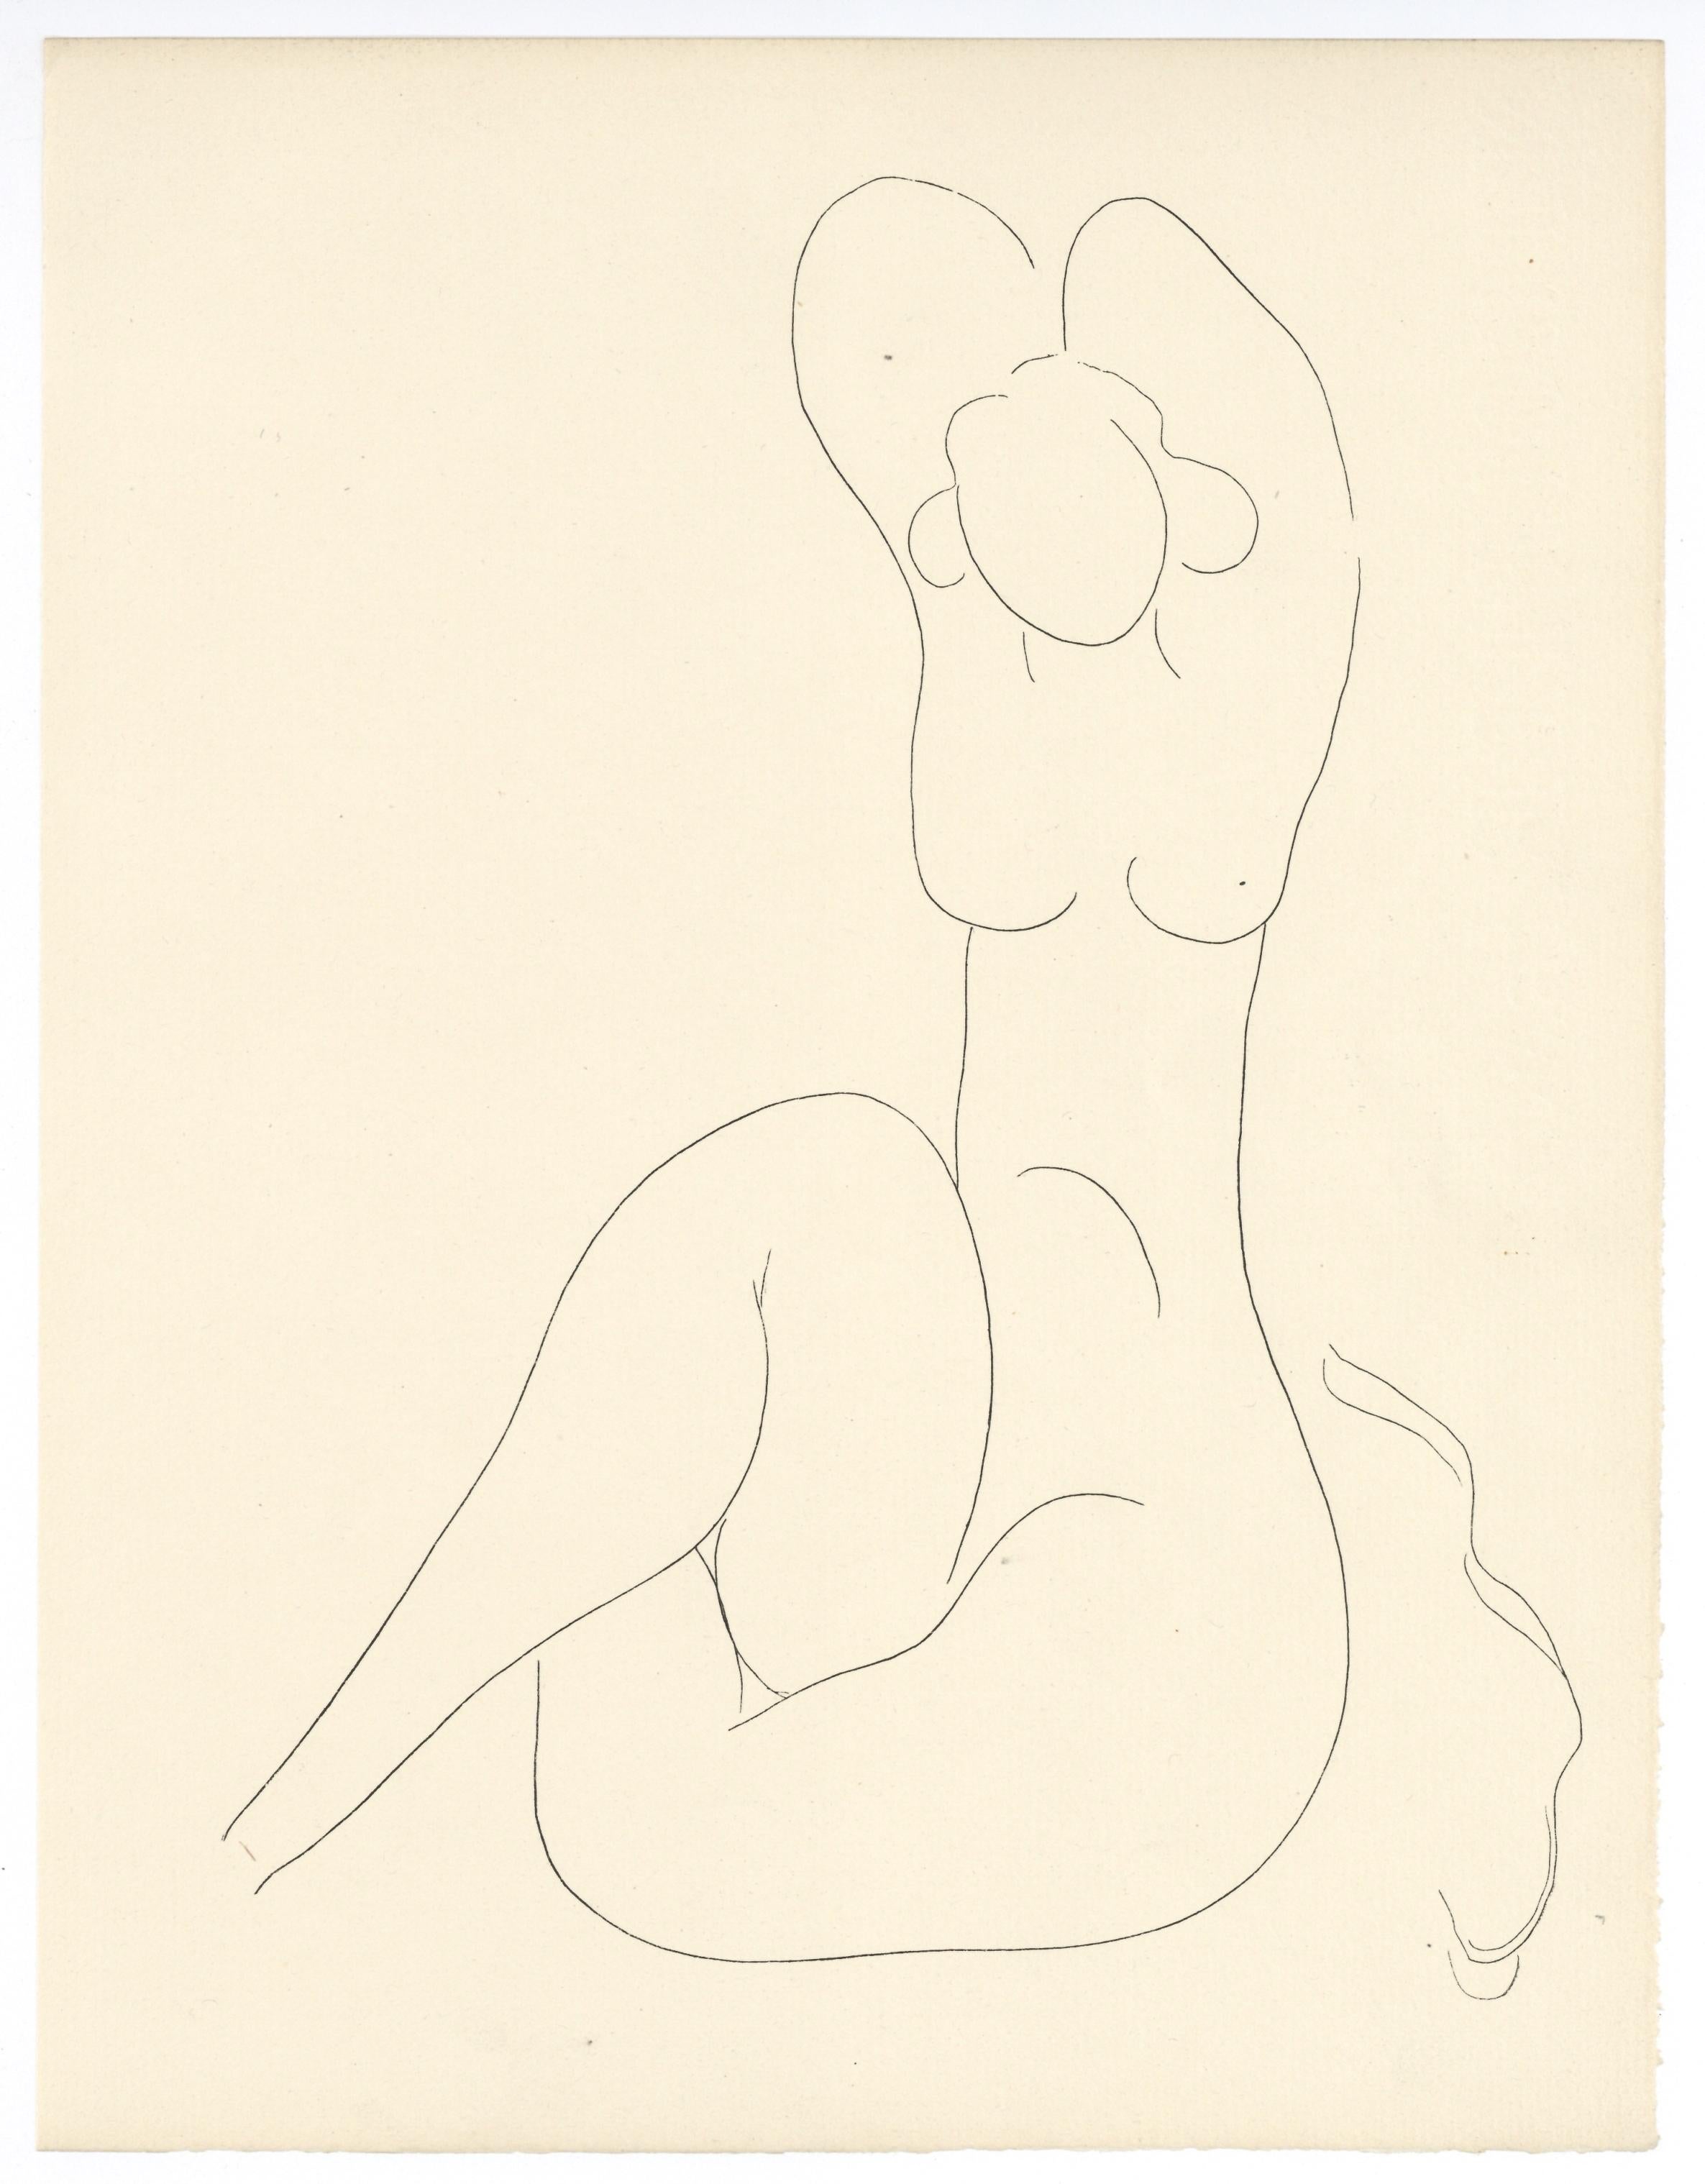 Poésies de Mallarme - Print de (after) Henri Matisse